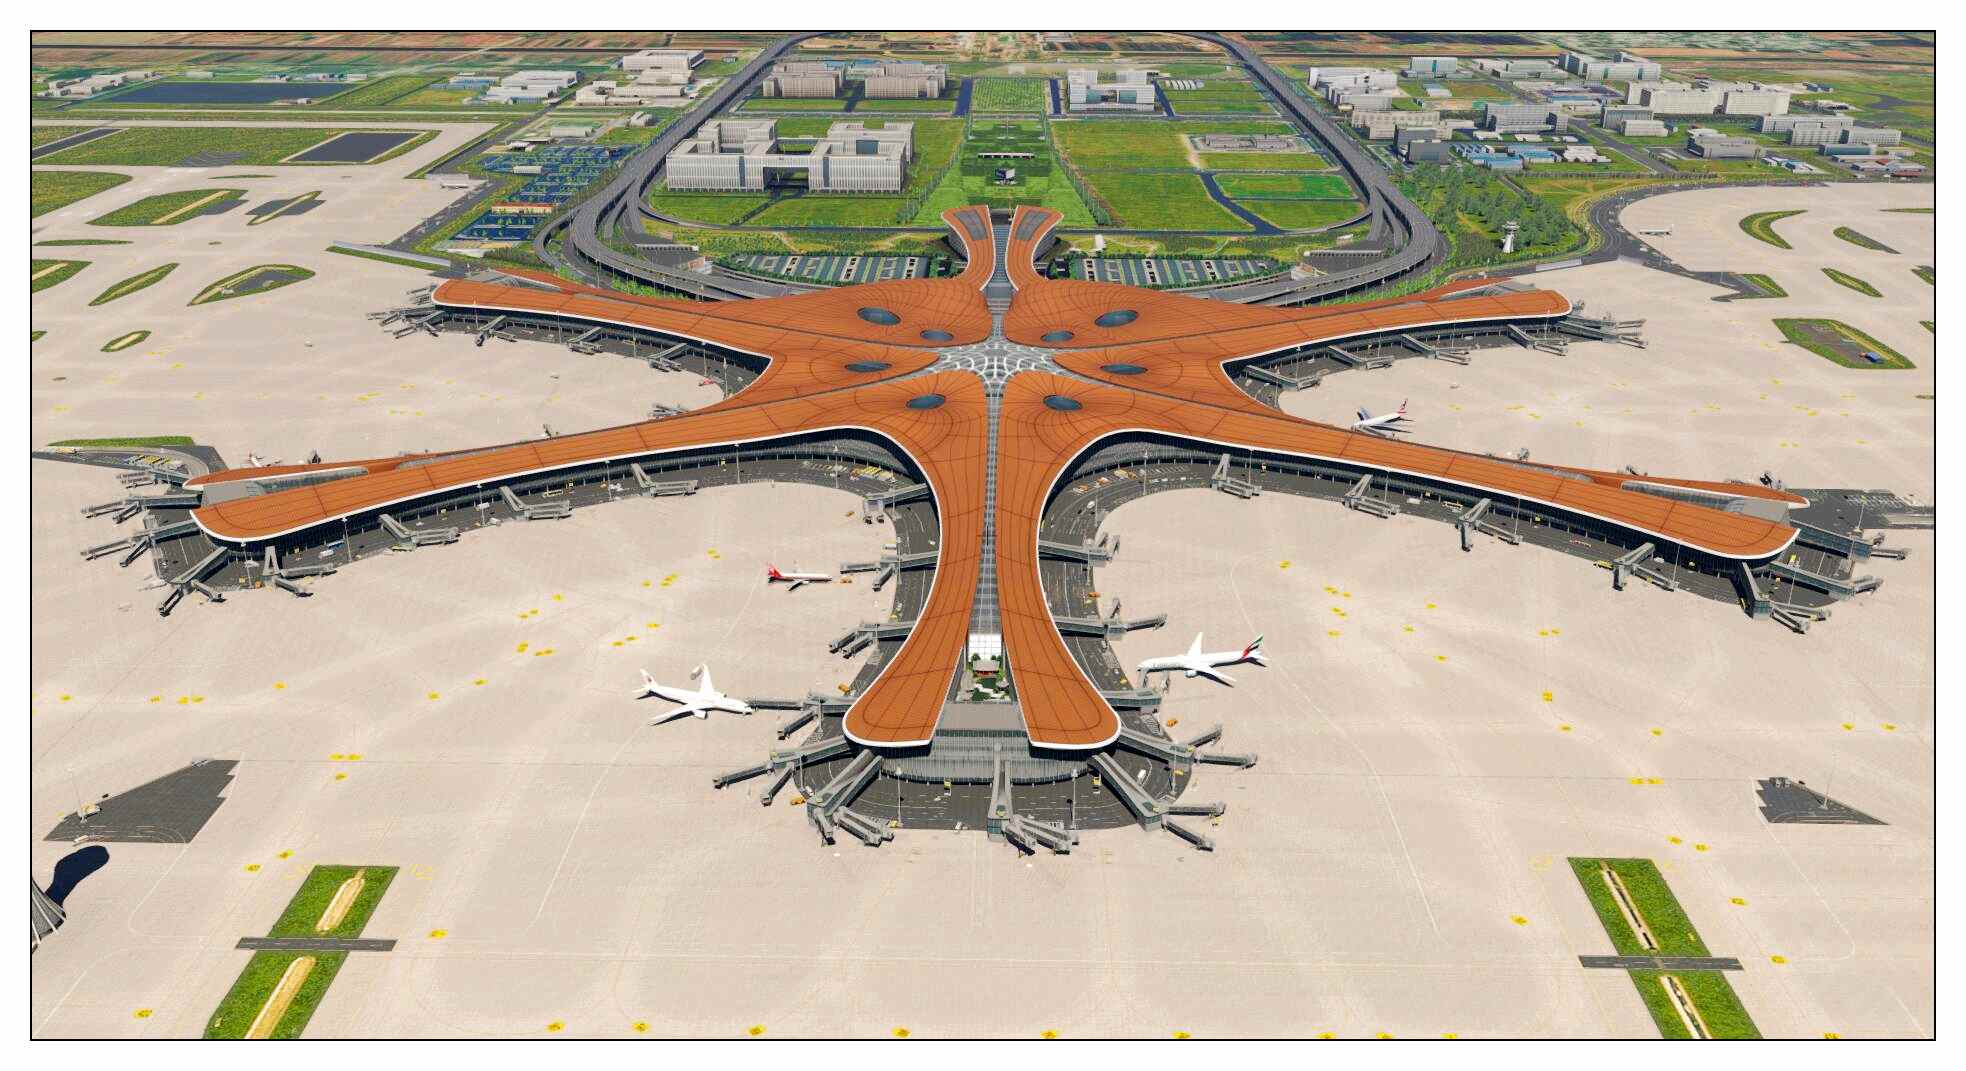 【X-Plane】ZBAD北京大兴国际机场-正式发布-5278 